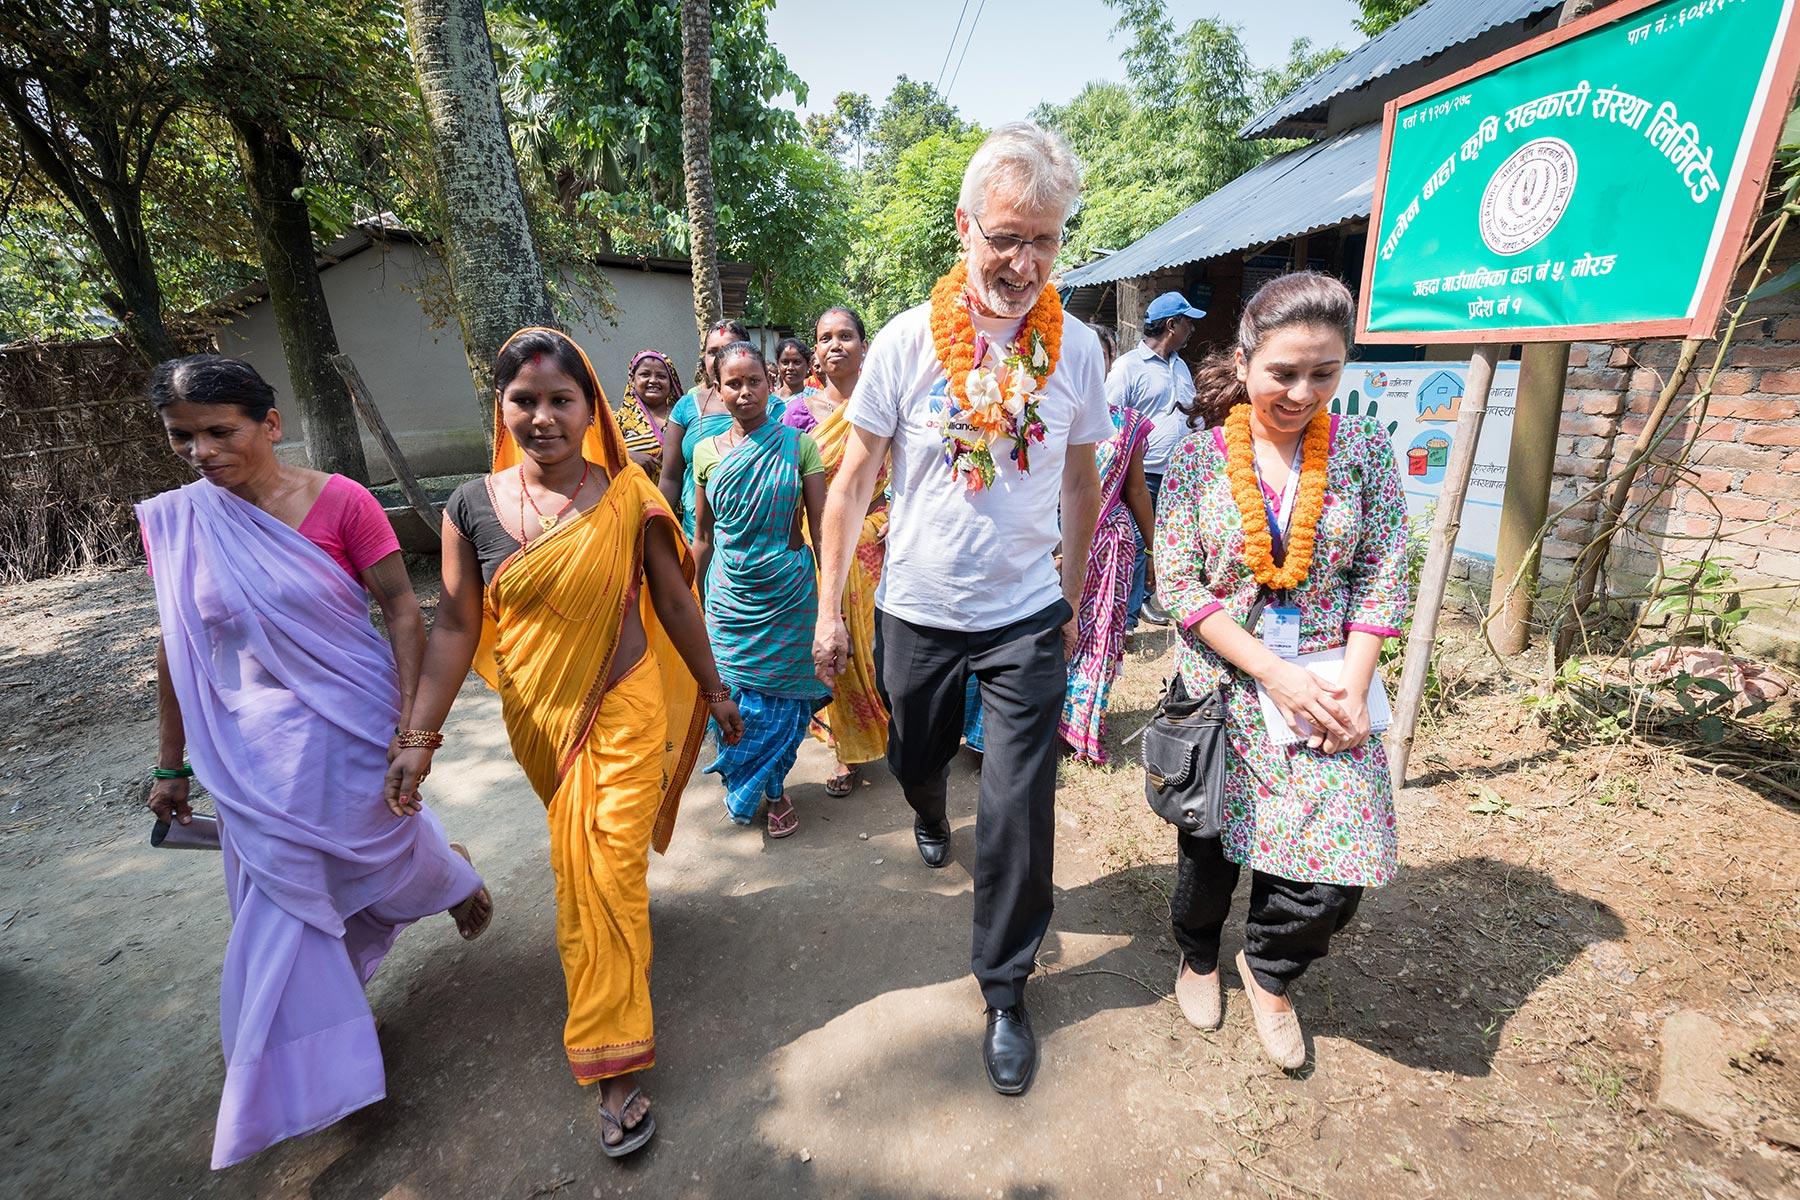 Der LWB-Generalsekretär Martin Junge besucht eine von Santal und Dalit (Musahar) bewohnte Gemeinde in Nepal. Die Gemeinde wird von der Nepalesischen Evangelisch-Lutherischen Kirche und dem LWB-Weltdienst unterstützt. Foto: LWB/Albin Hillert